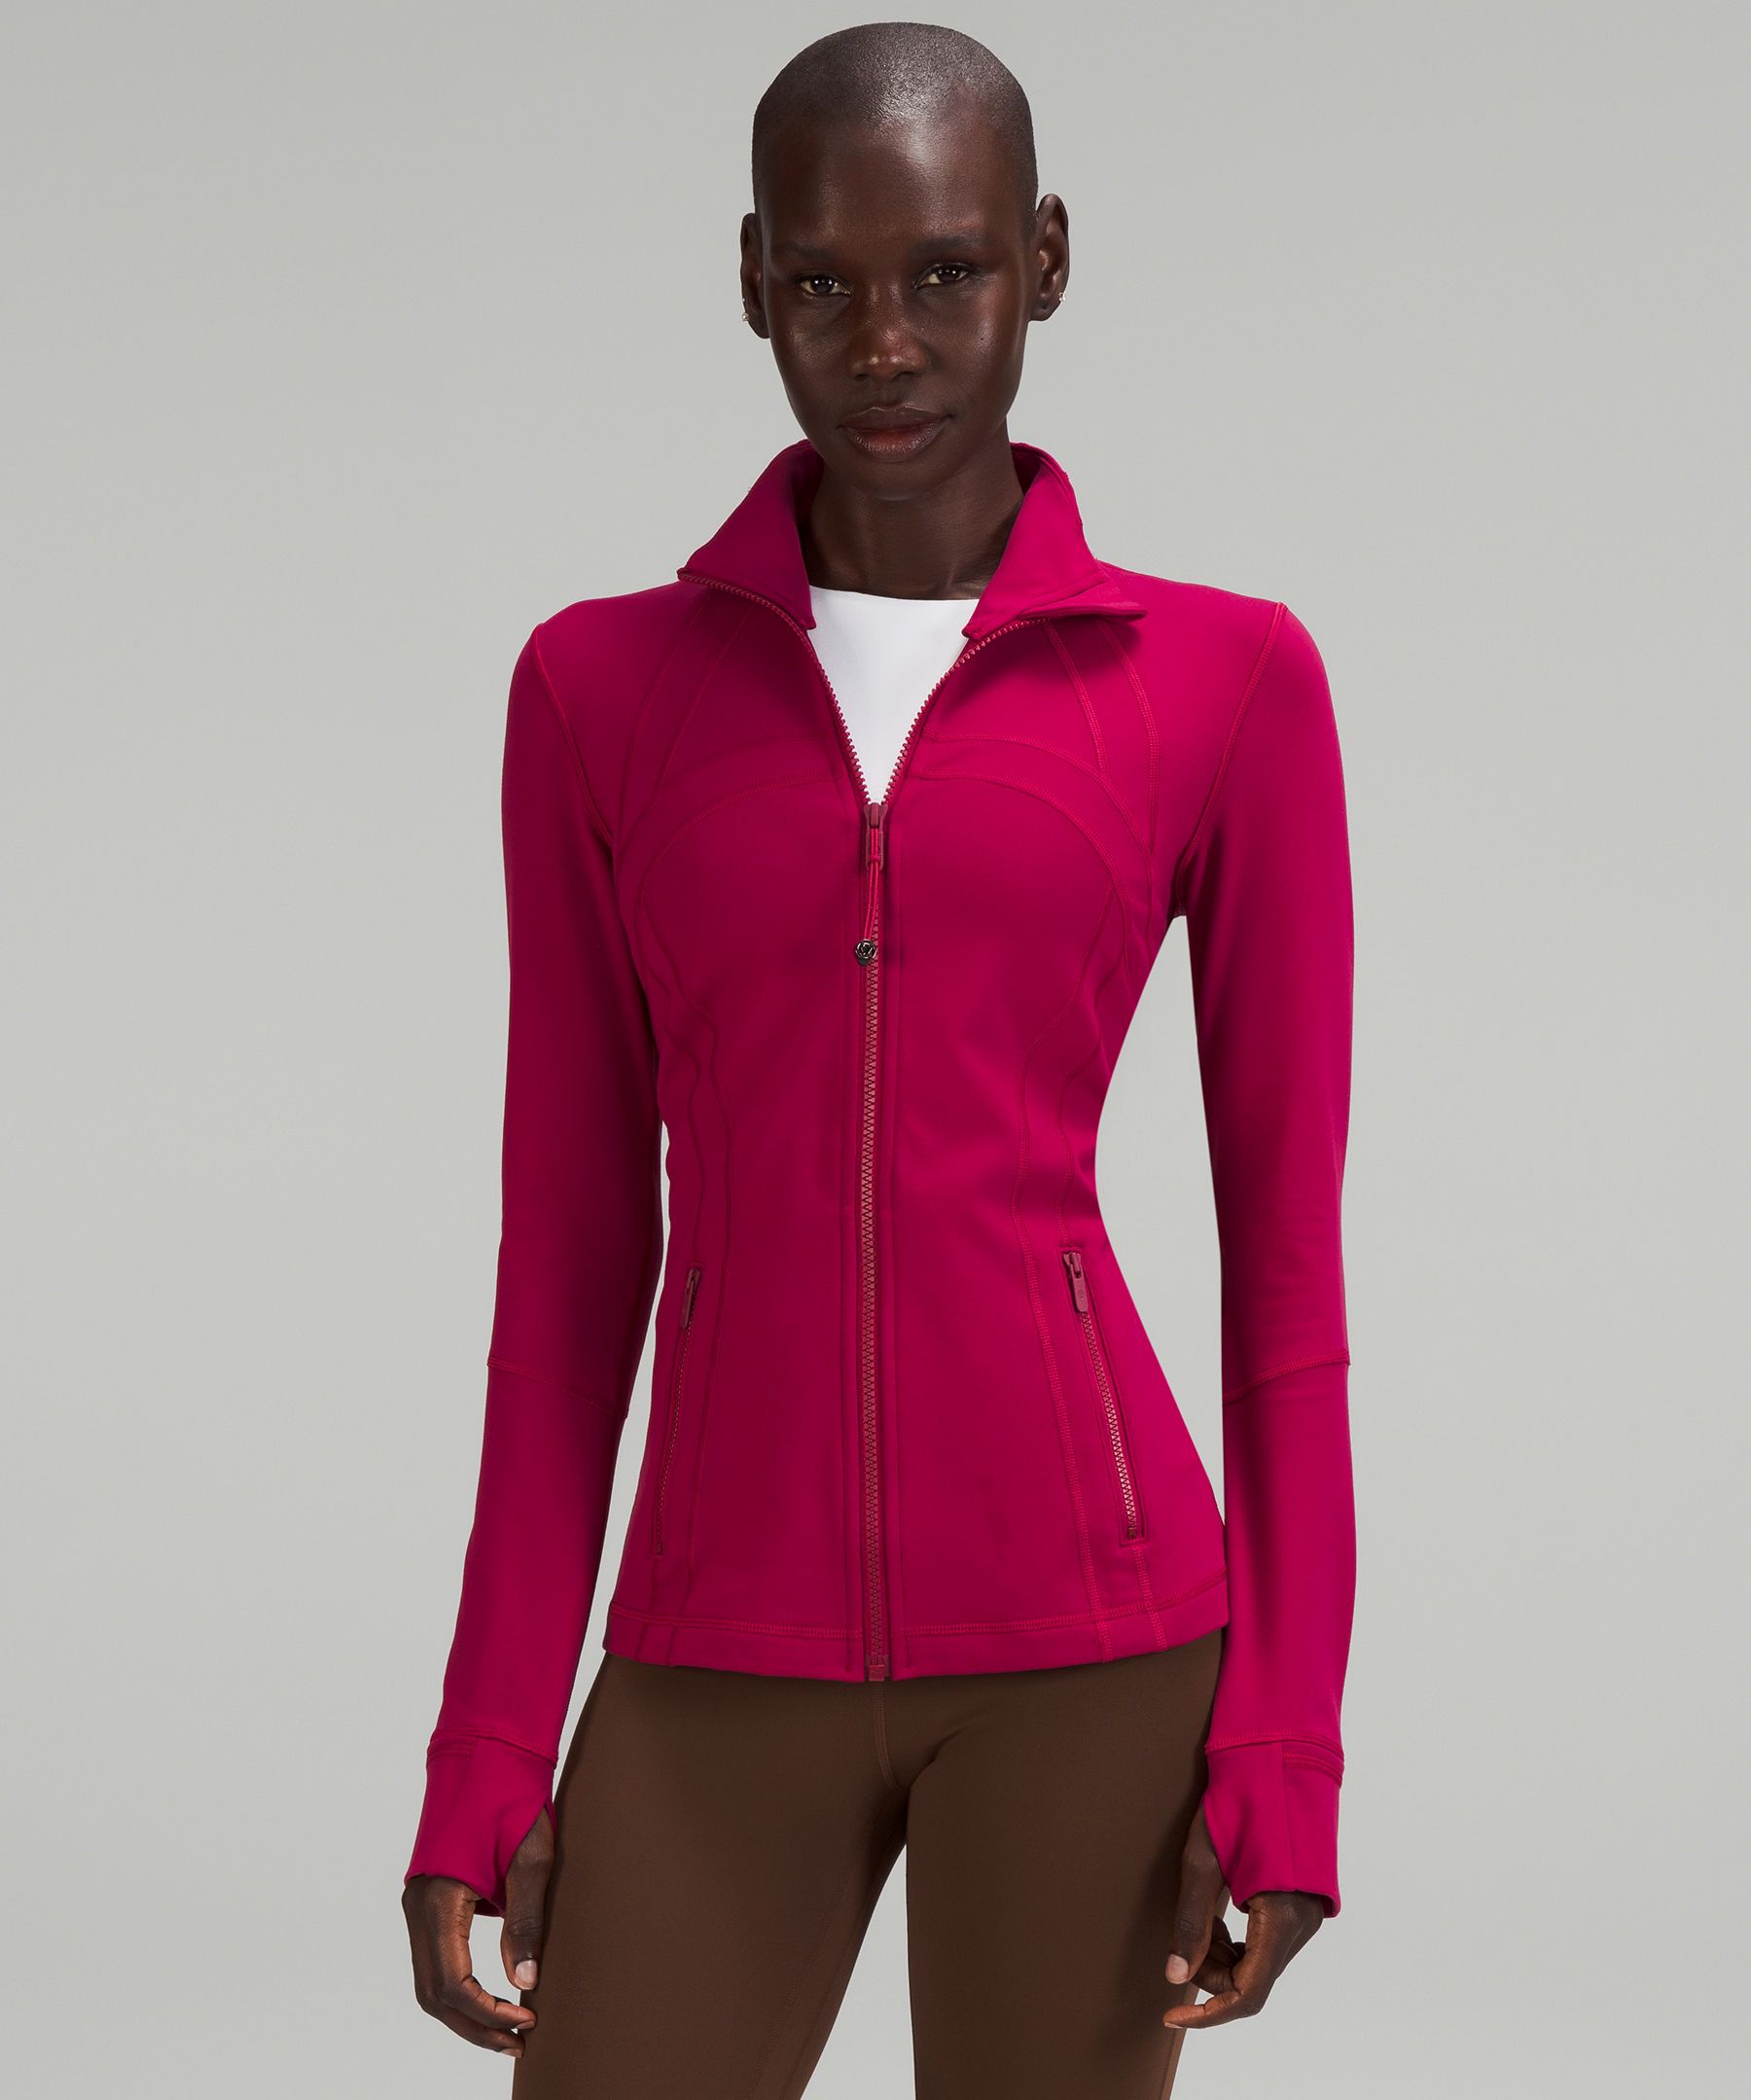 トップス トレーナー/スウェット Define Jacket *Luon | Women's Hoodies & Sweatshirts | lululemon